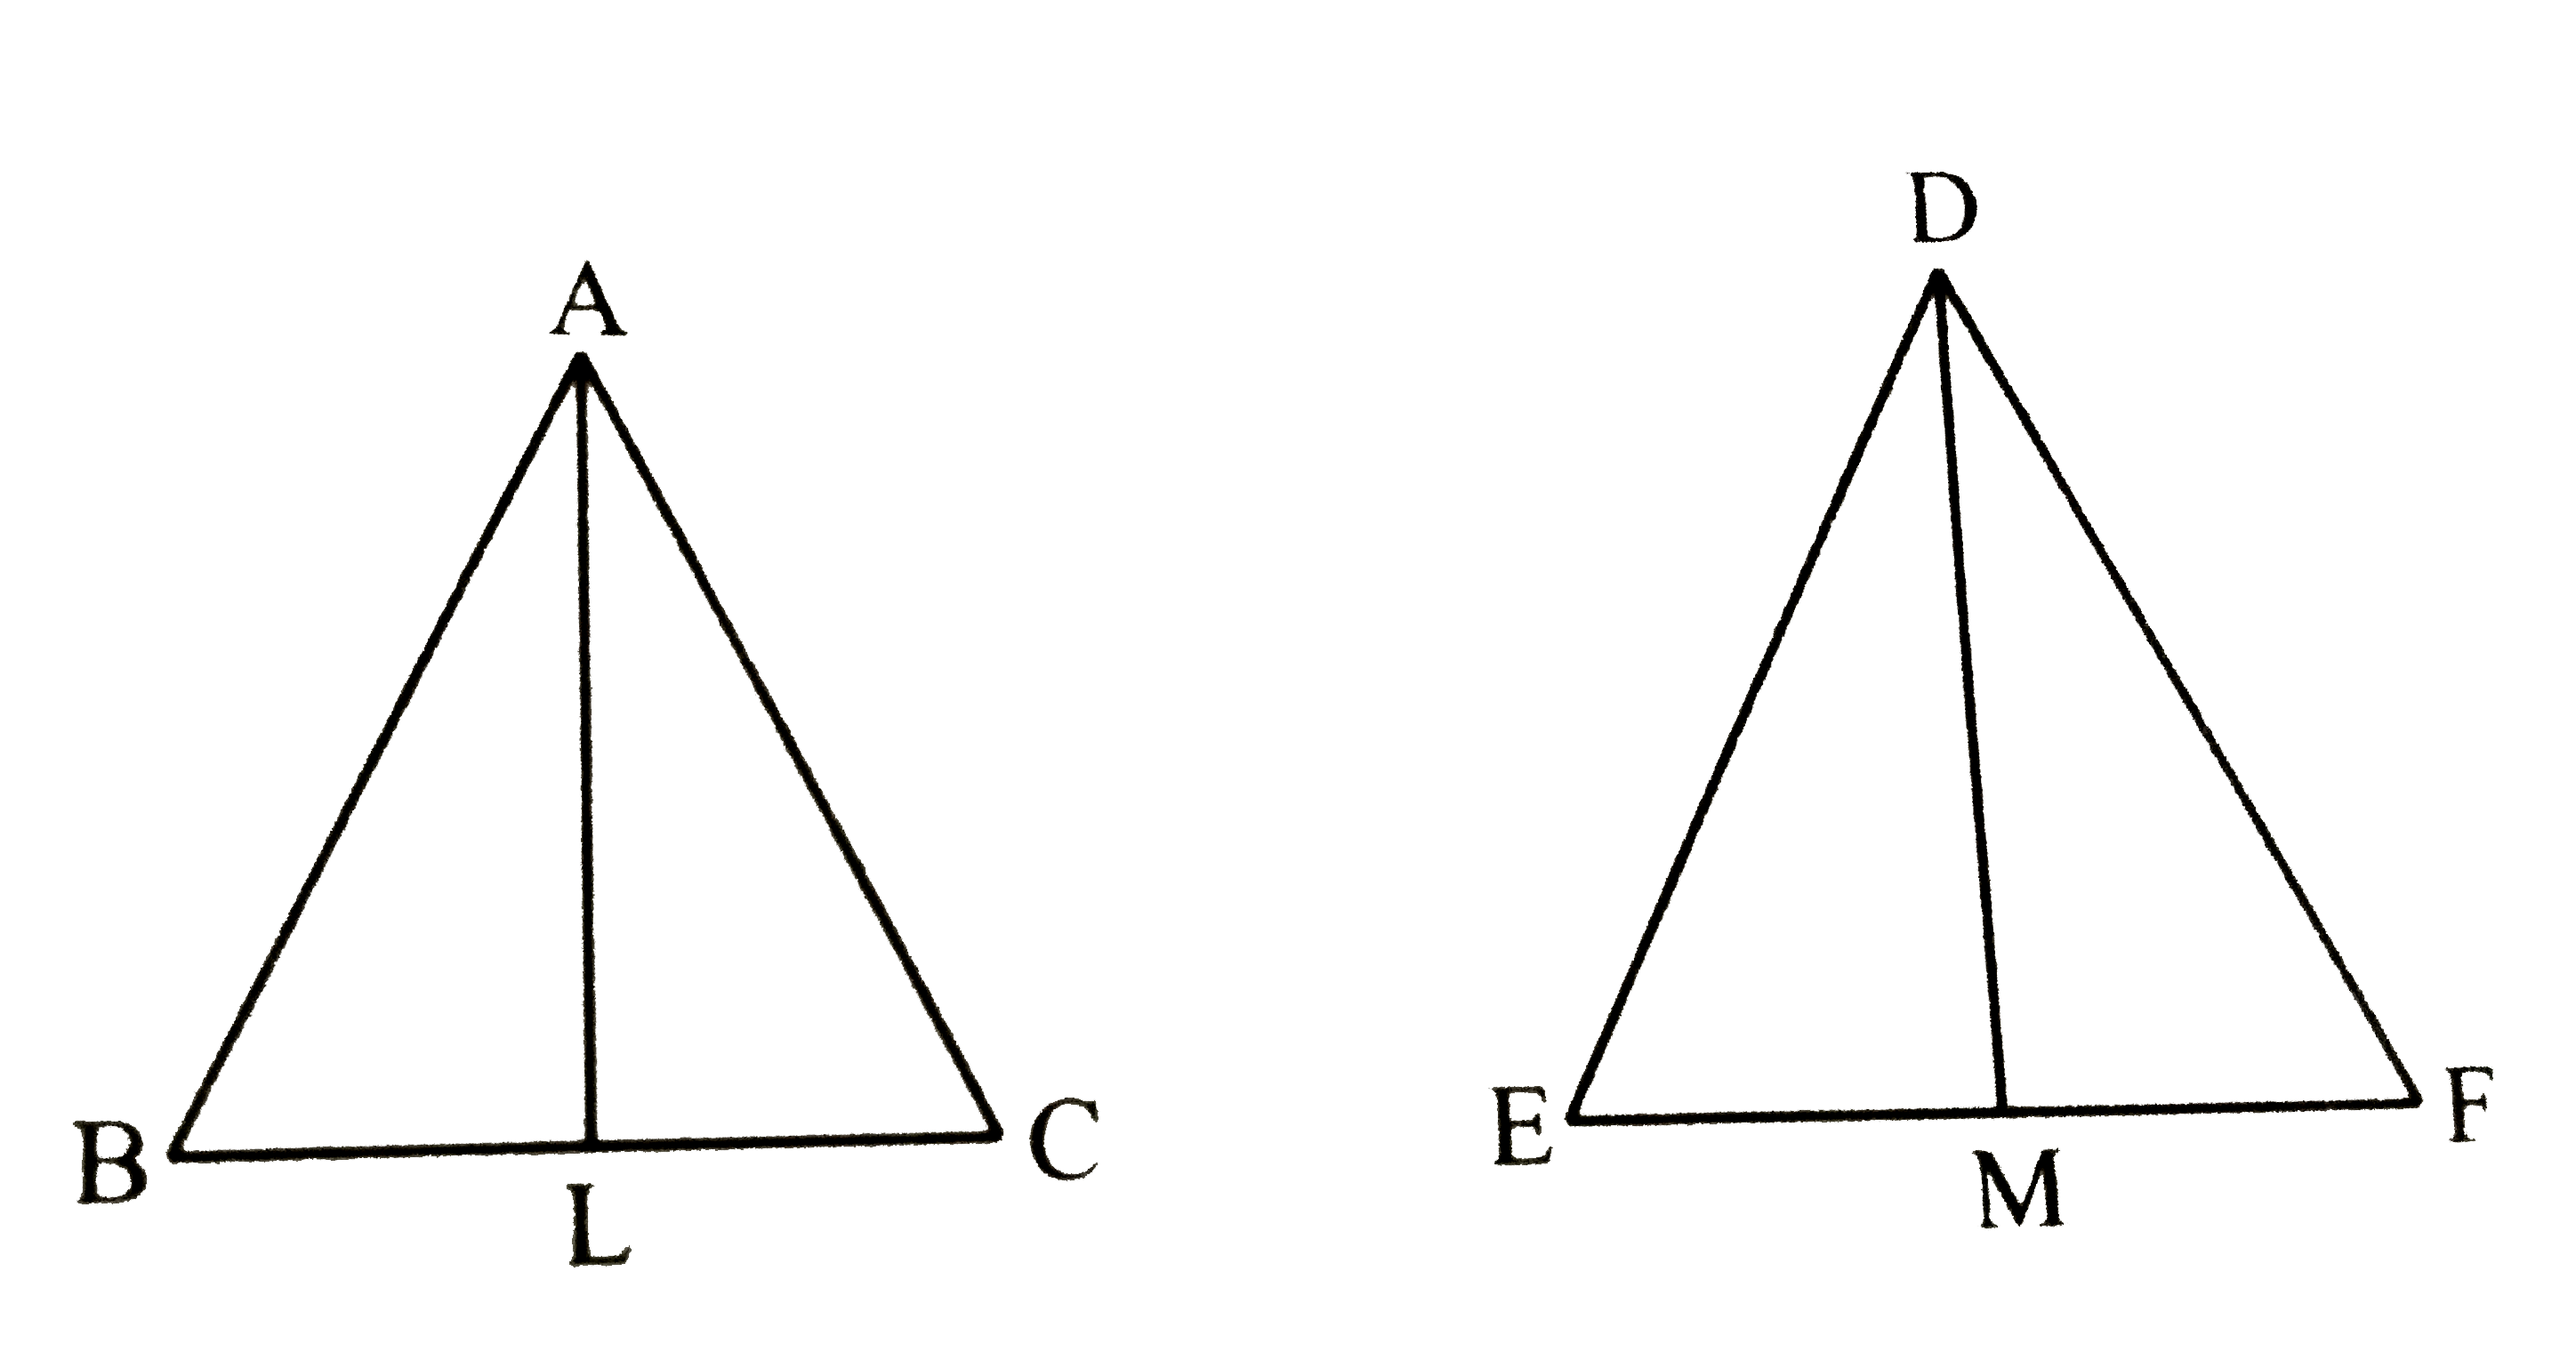 दो समद्विबाहु त्रिभुजों की शीर्षकोण समान है और उनके क्षेत्रफलो के अनुपात 16 : 25 है तो उनकी संगत ऊँचाइयाँ के अनुपात ज्ञात कीजिए |